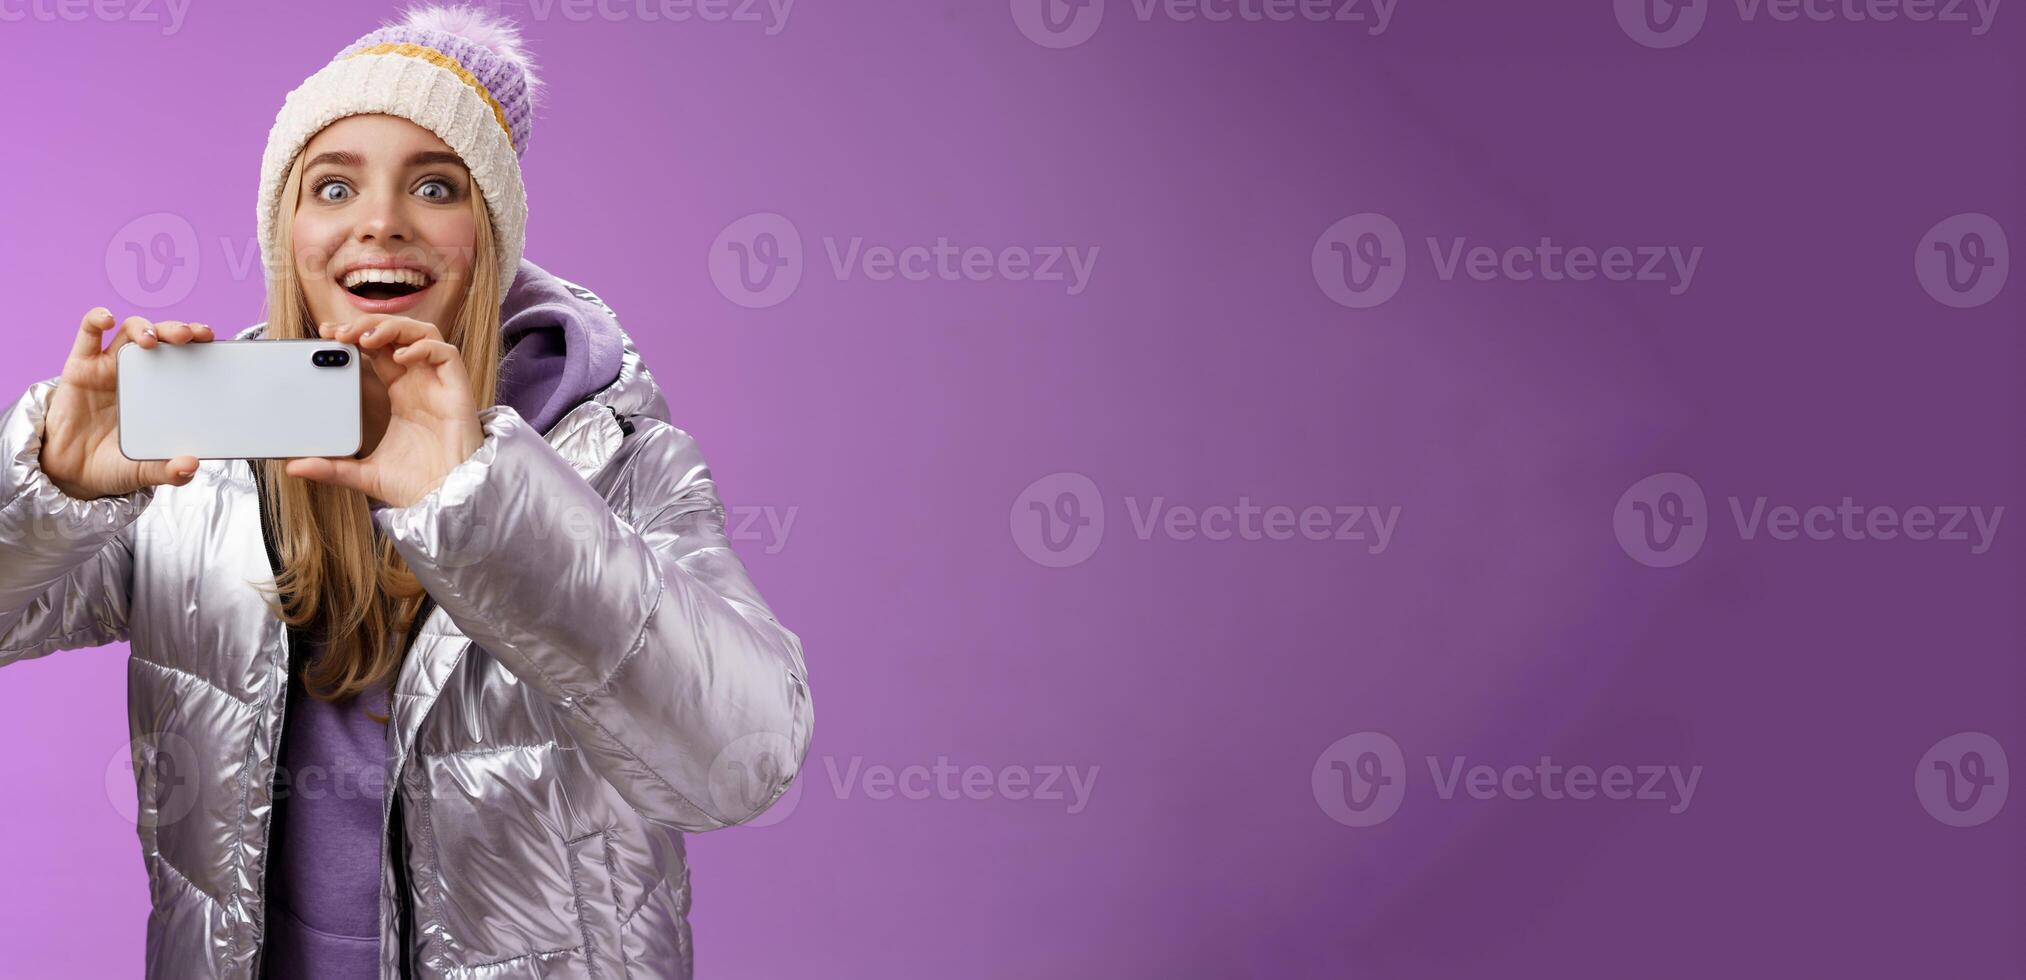 divertido fascinado hembra en plata chaqueta cabeza sonriente asombrado emocionado Mira adelante participación teléfono inteligente grabación vídeo tomando disparos famoso persona móvil teléfono cámara, púrpura antecedentes foto